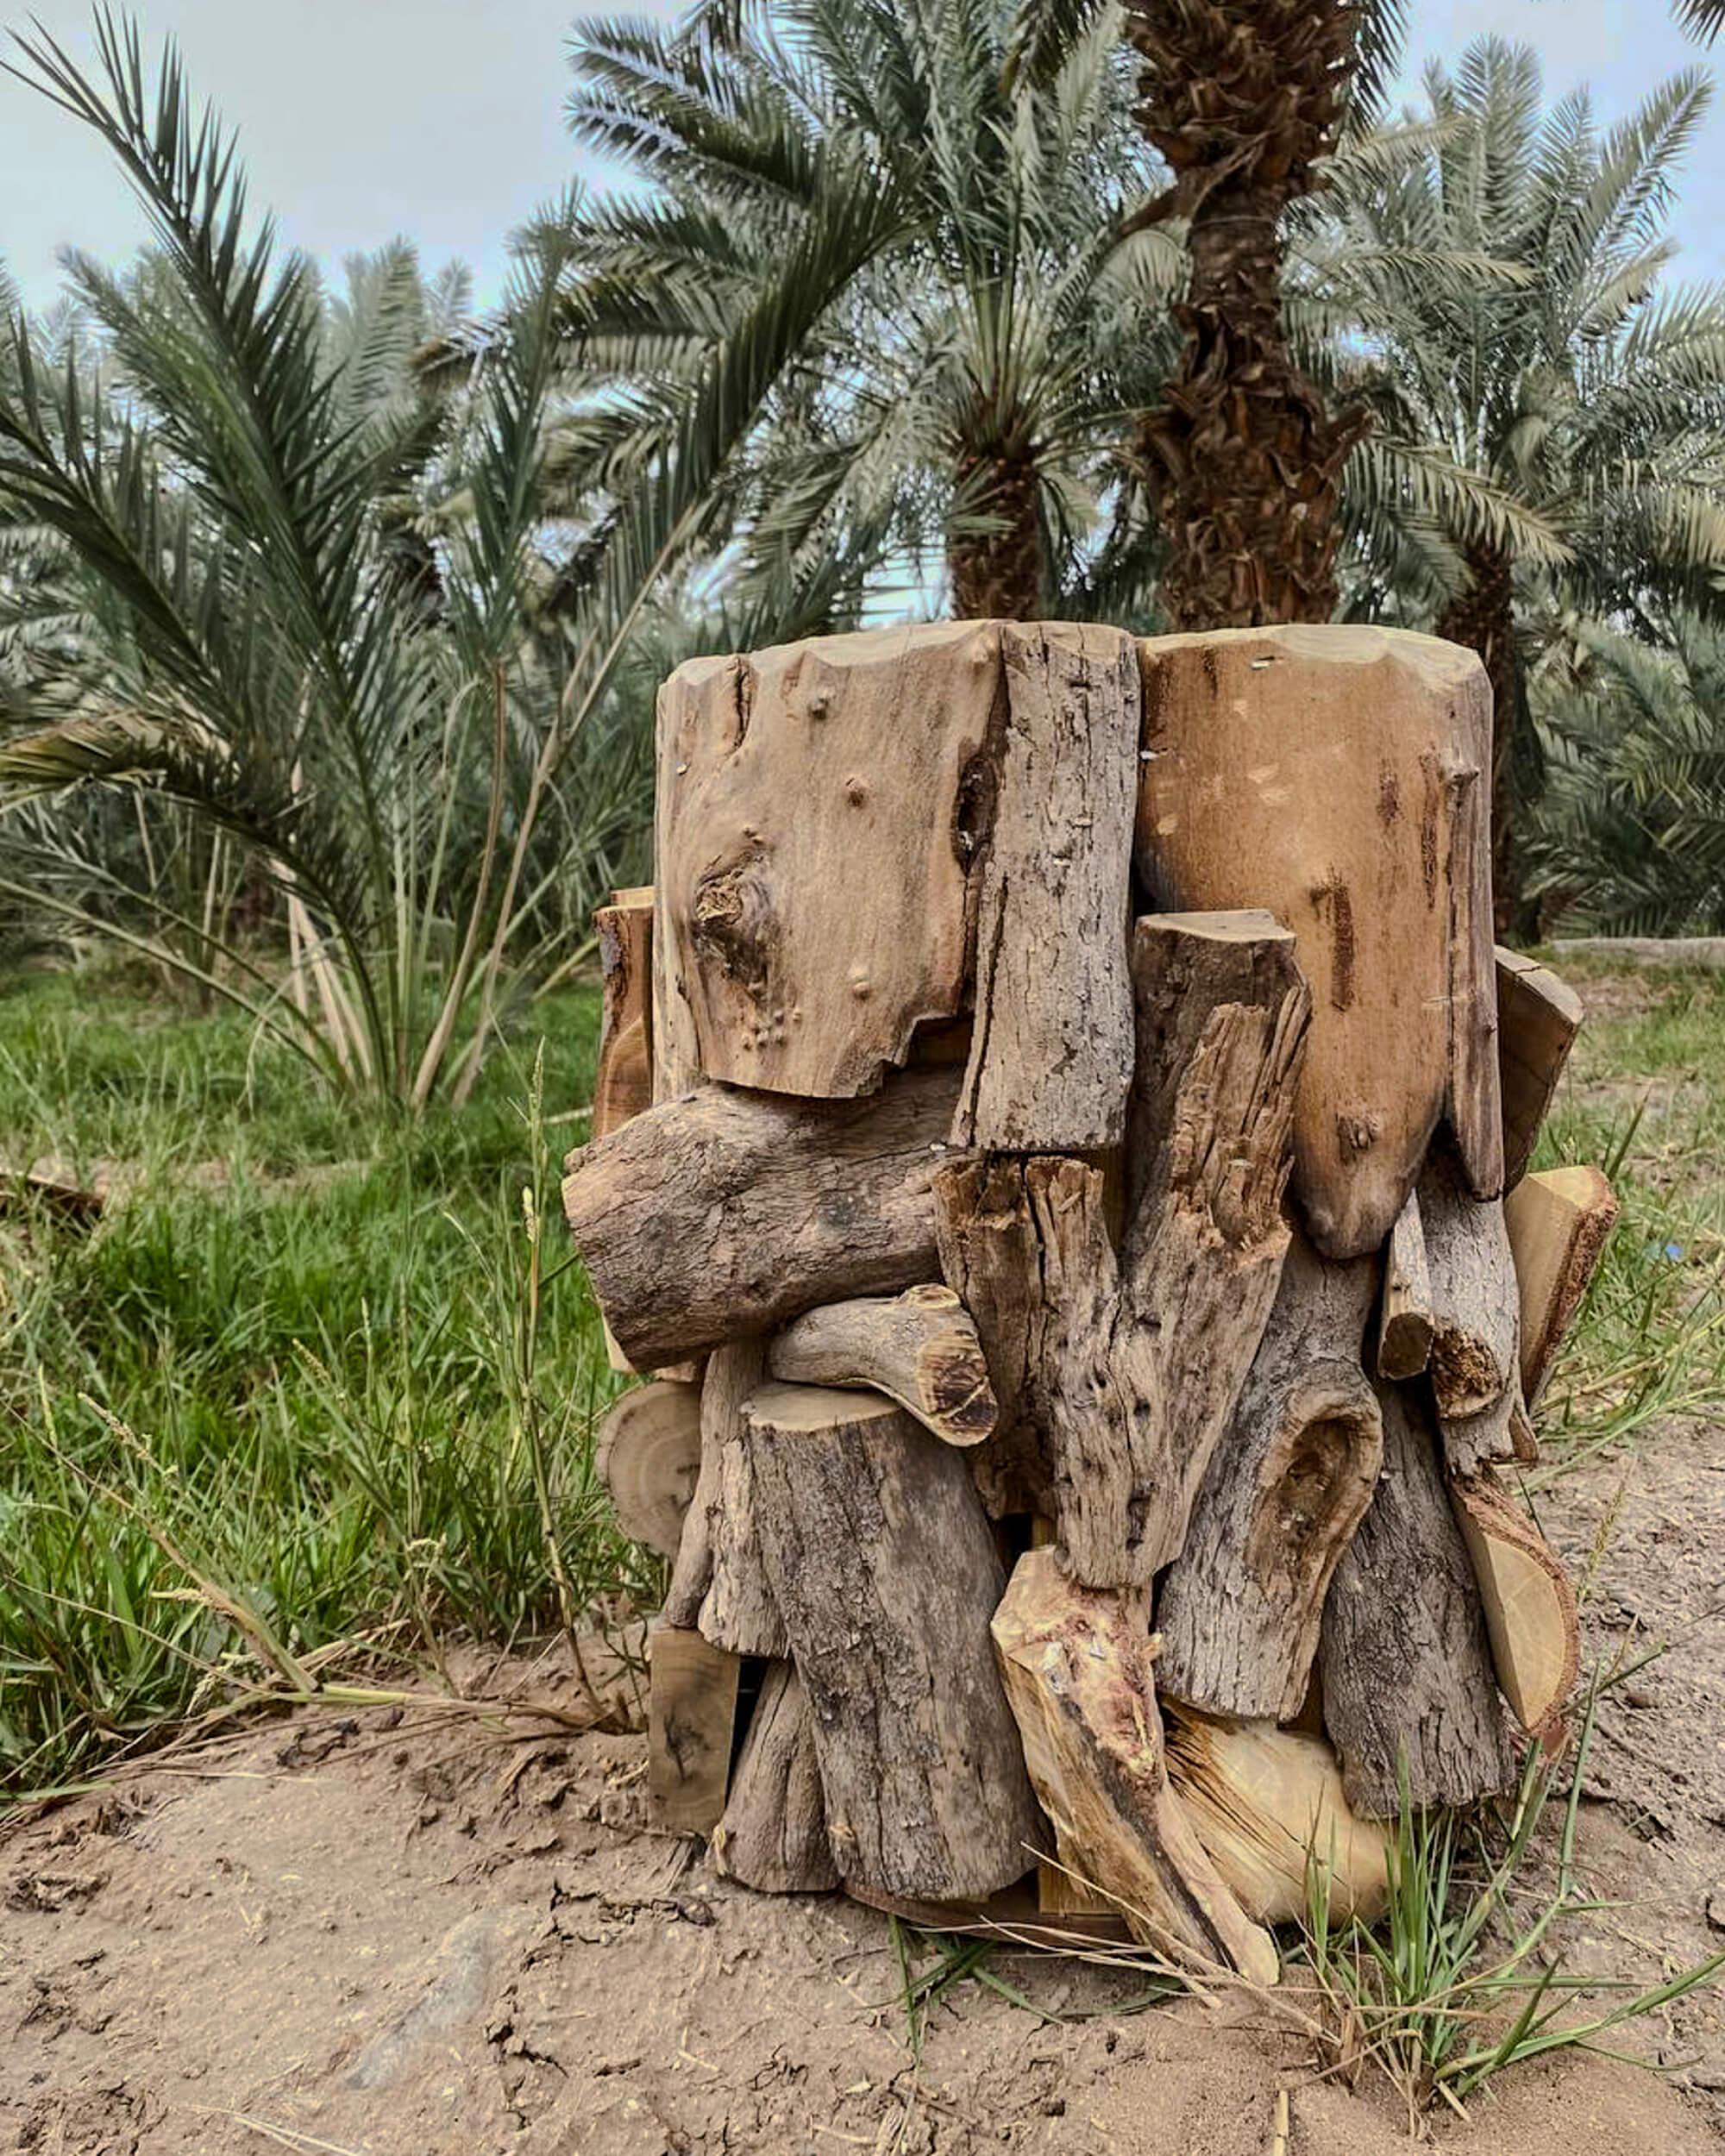 حافظ علي البيئة والأرث بشجرة الاثل
المصدر: أحمد الحربي